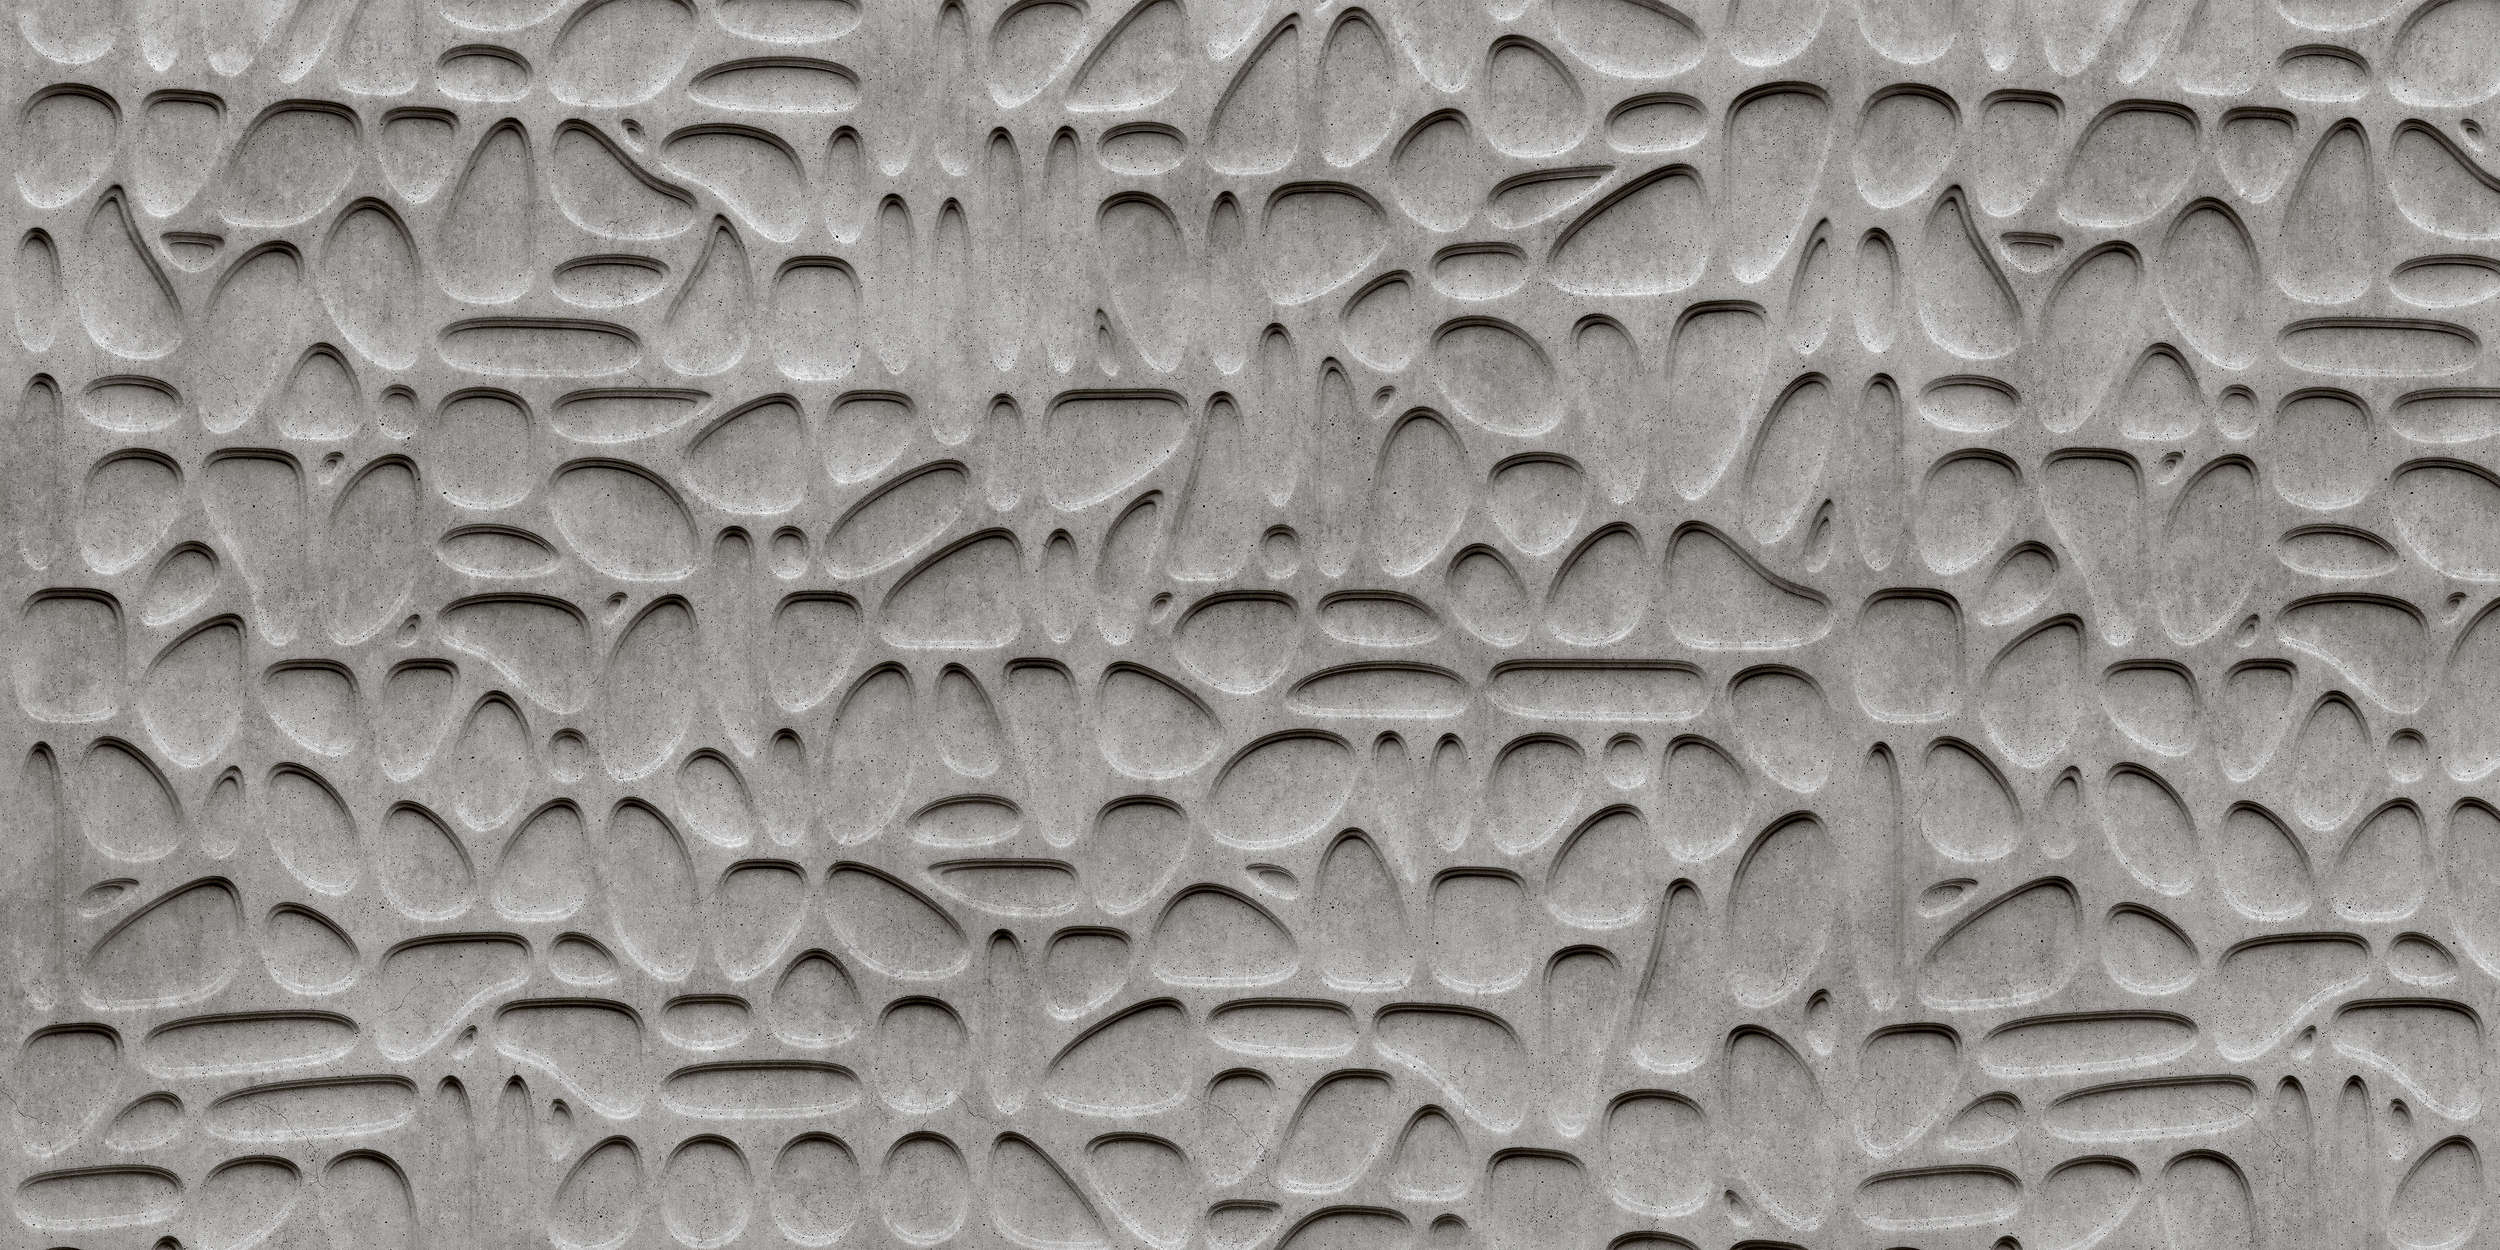             Laberinto 1 - Papel pintado Burbujas de hormigón 3D - Gris, Negro | Tejido sin tejer texturado
        